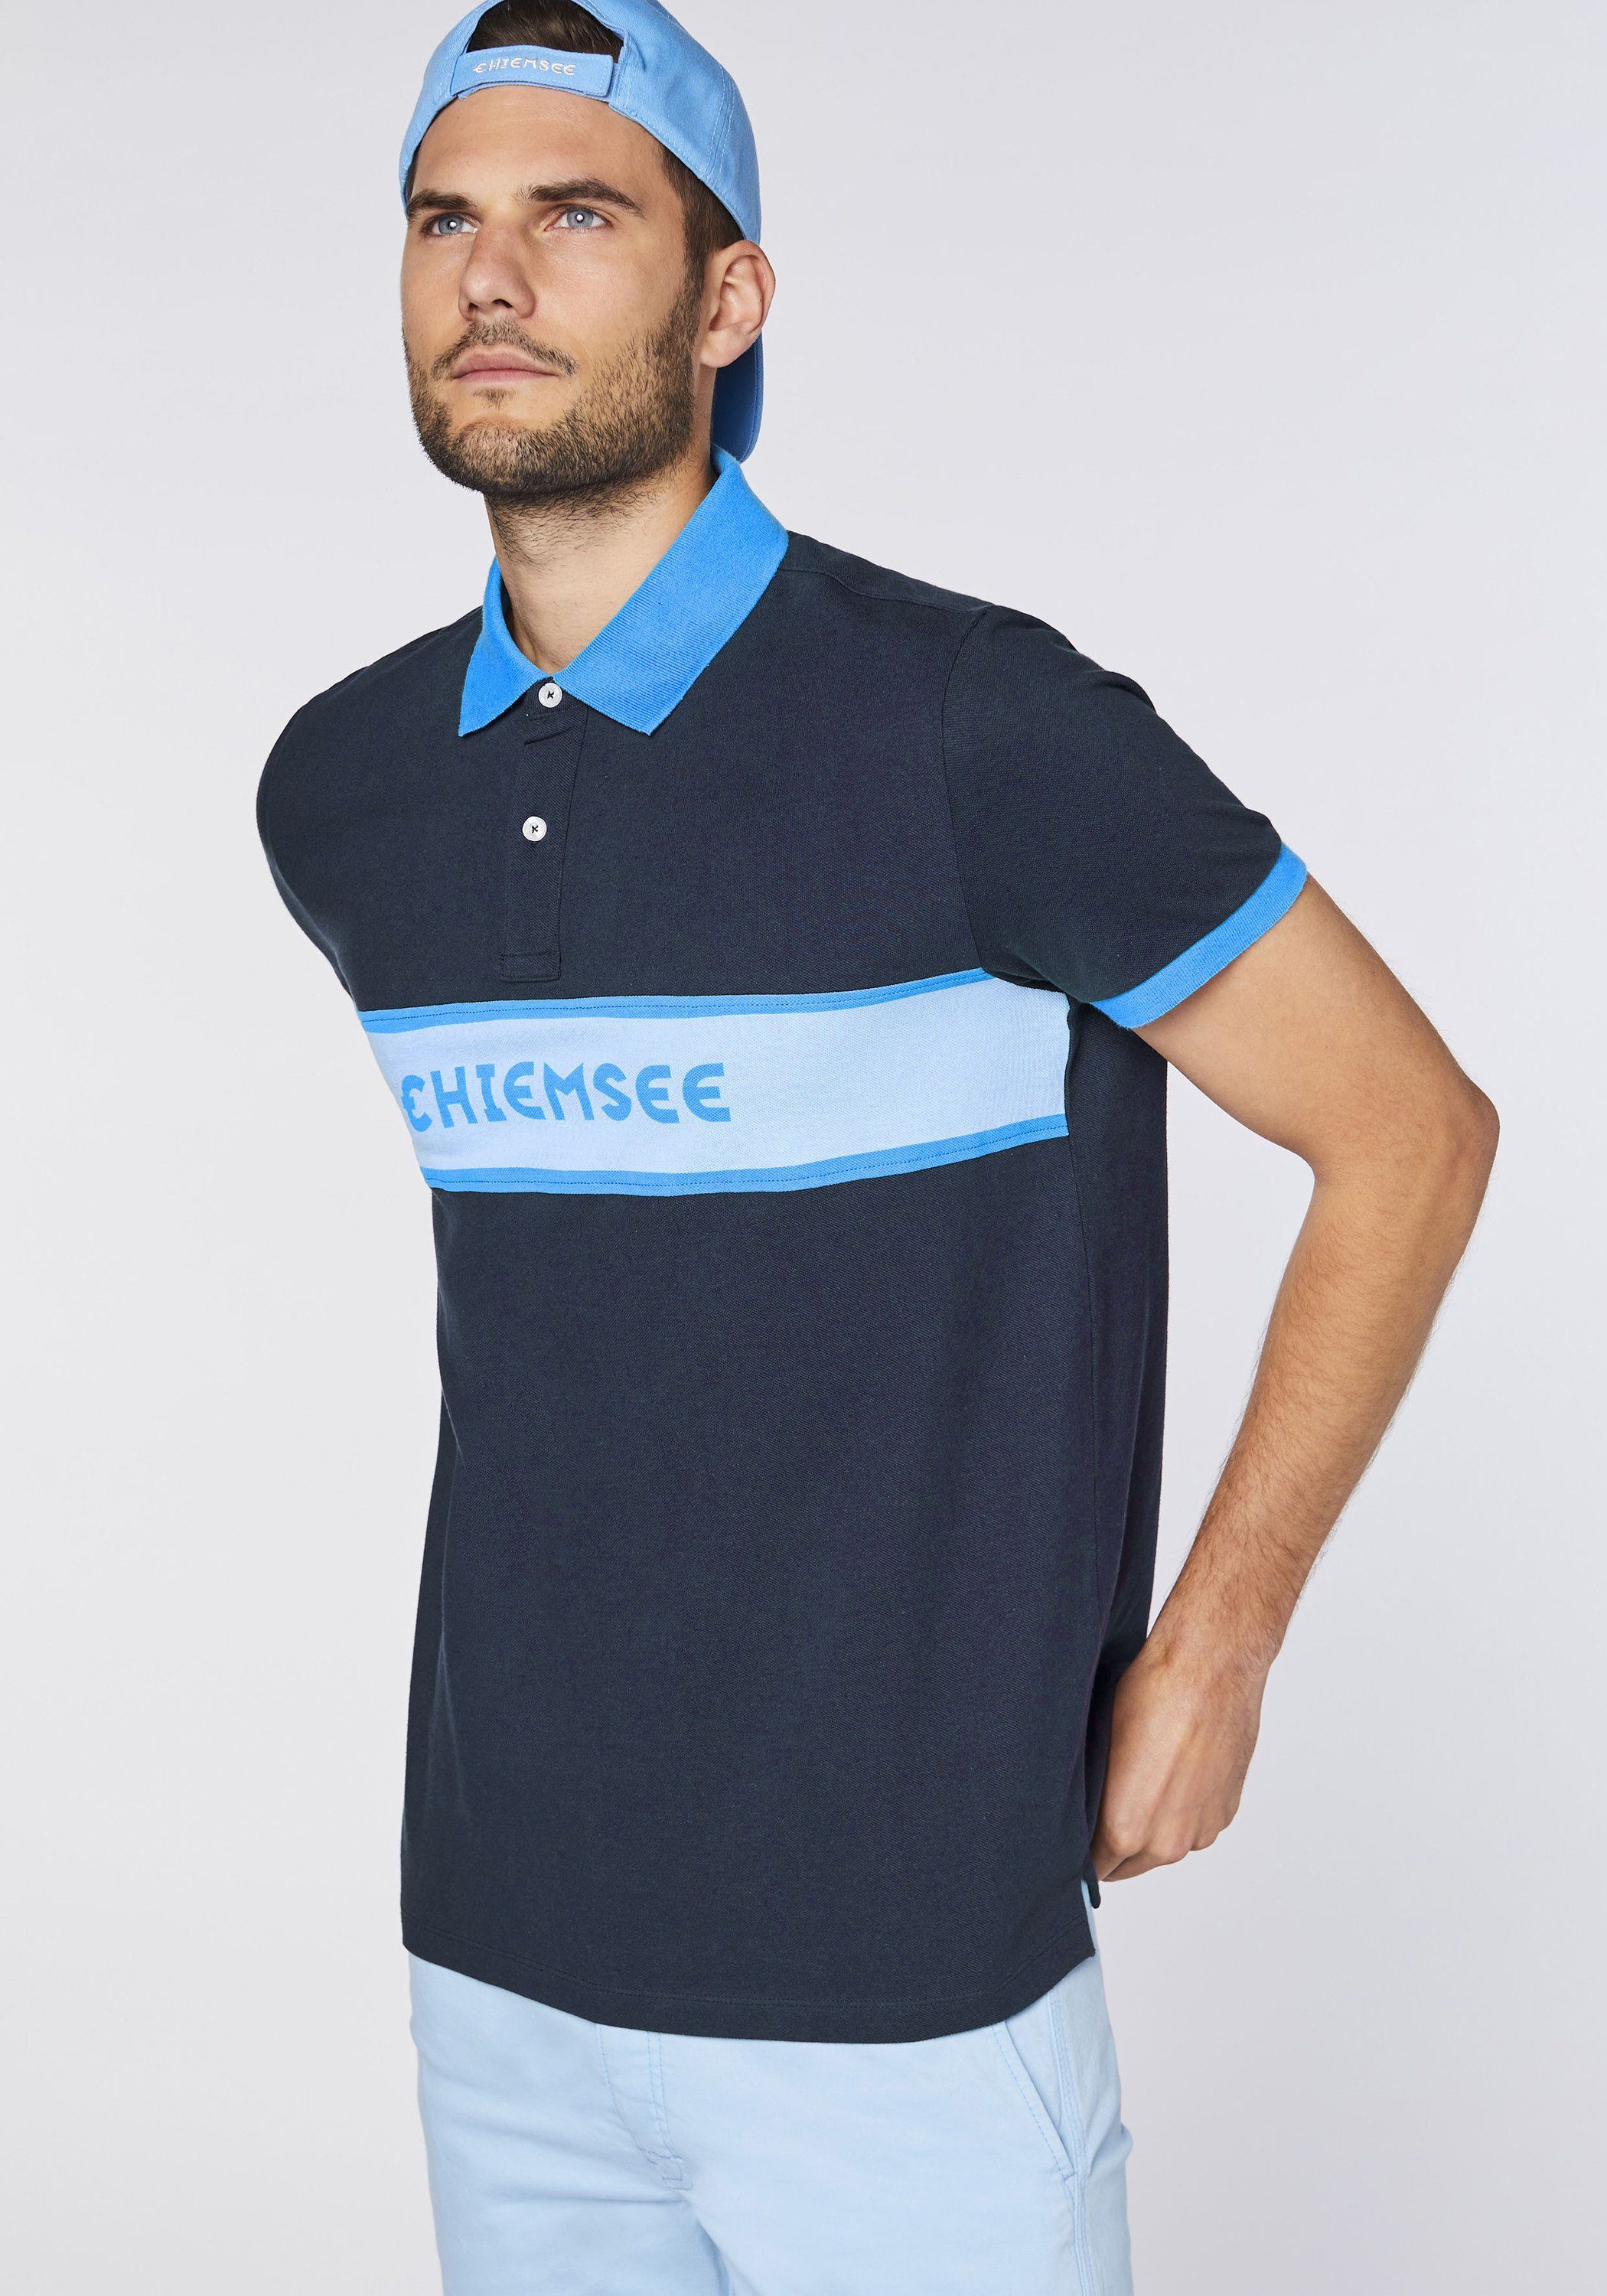 1 mit Chiemsee Poloshirt Poloshirt dunkel blau Baumwolle aus Logo-Blockstreifen